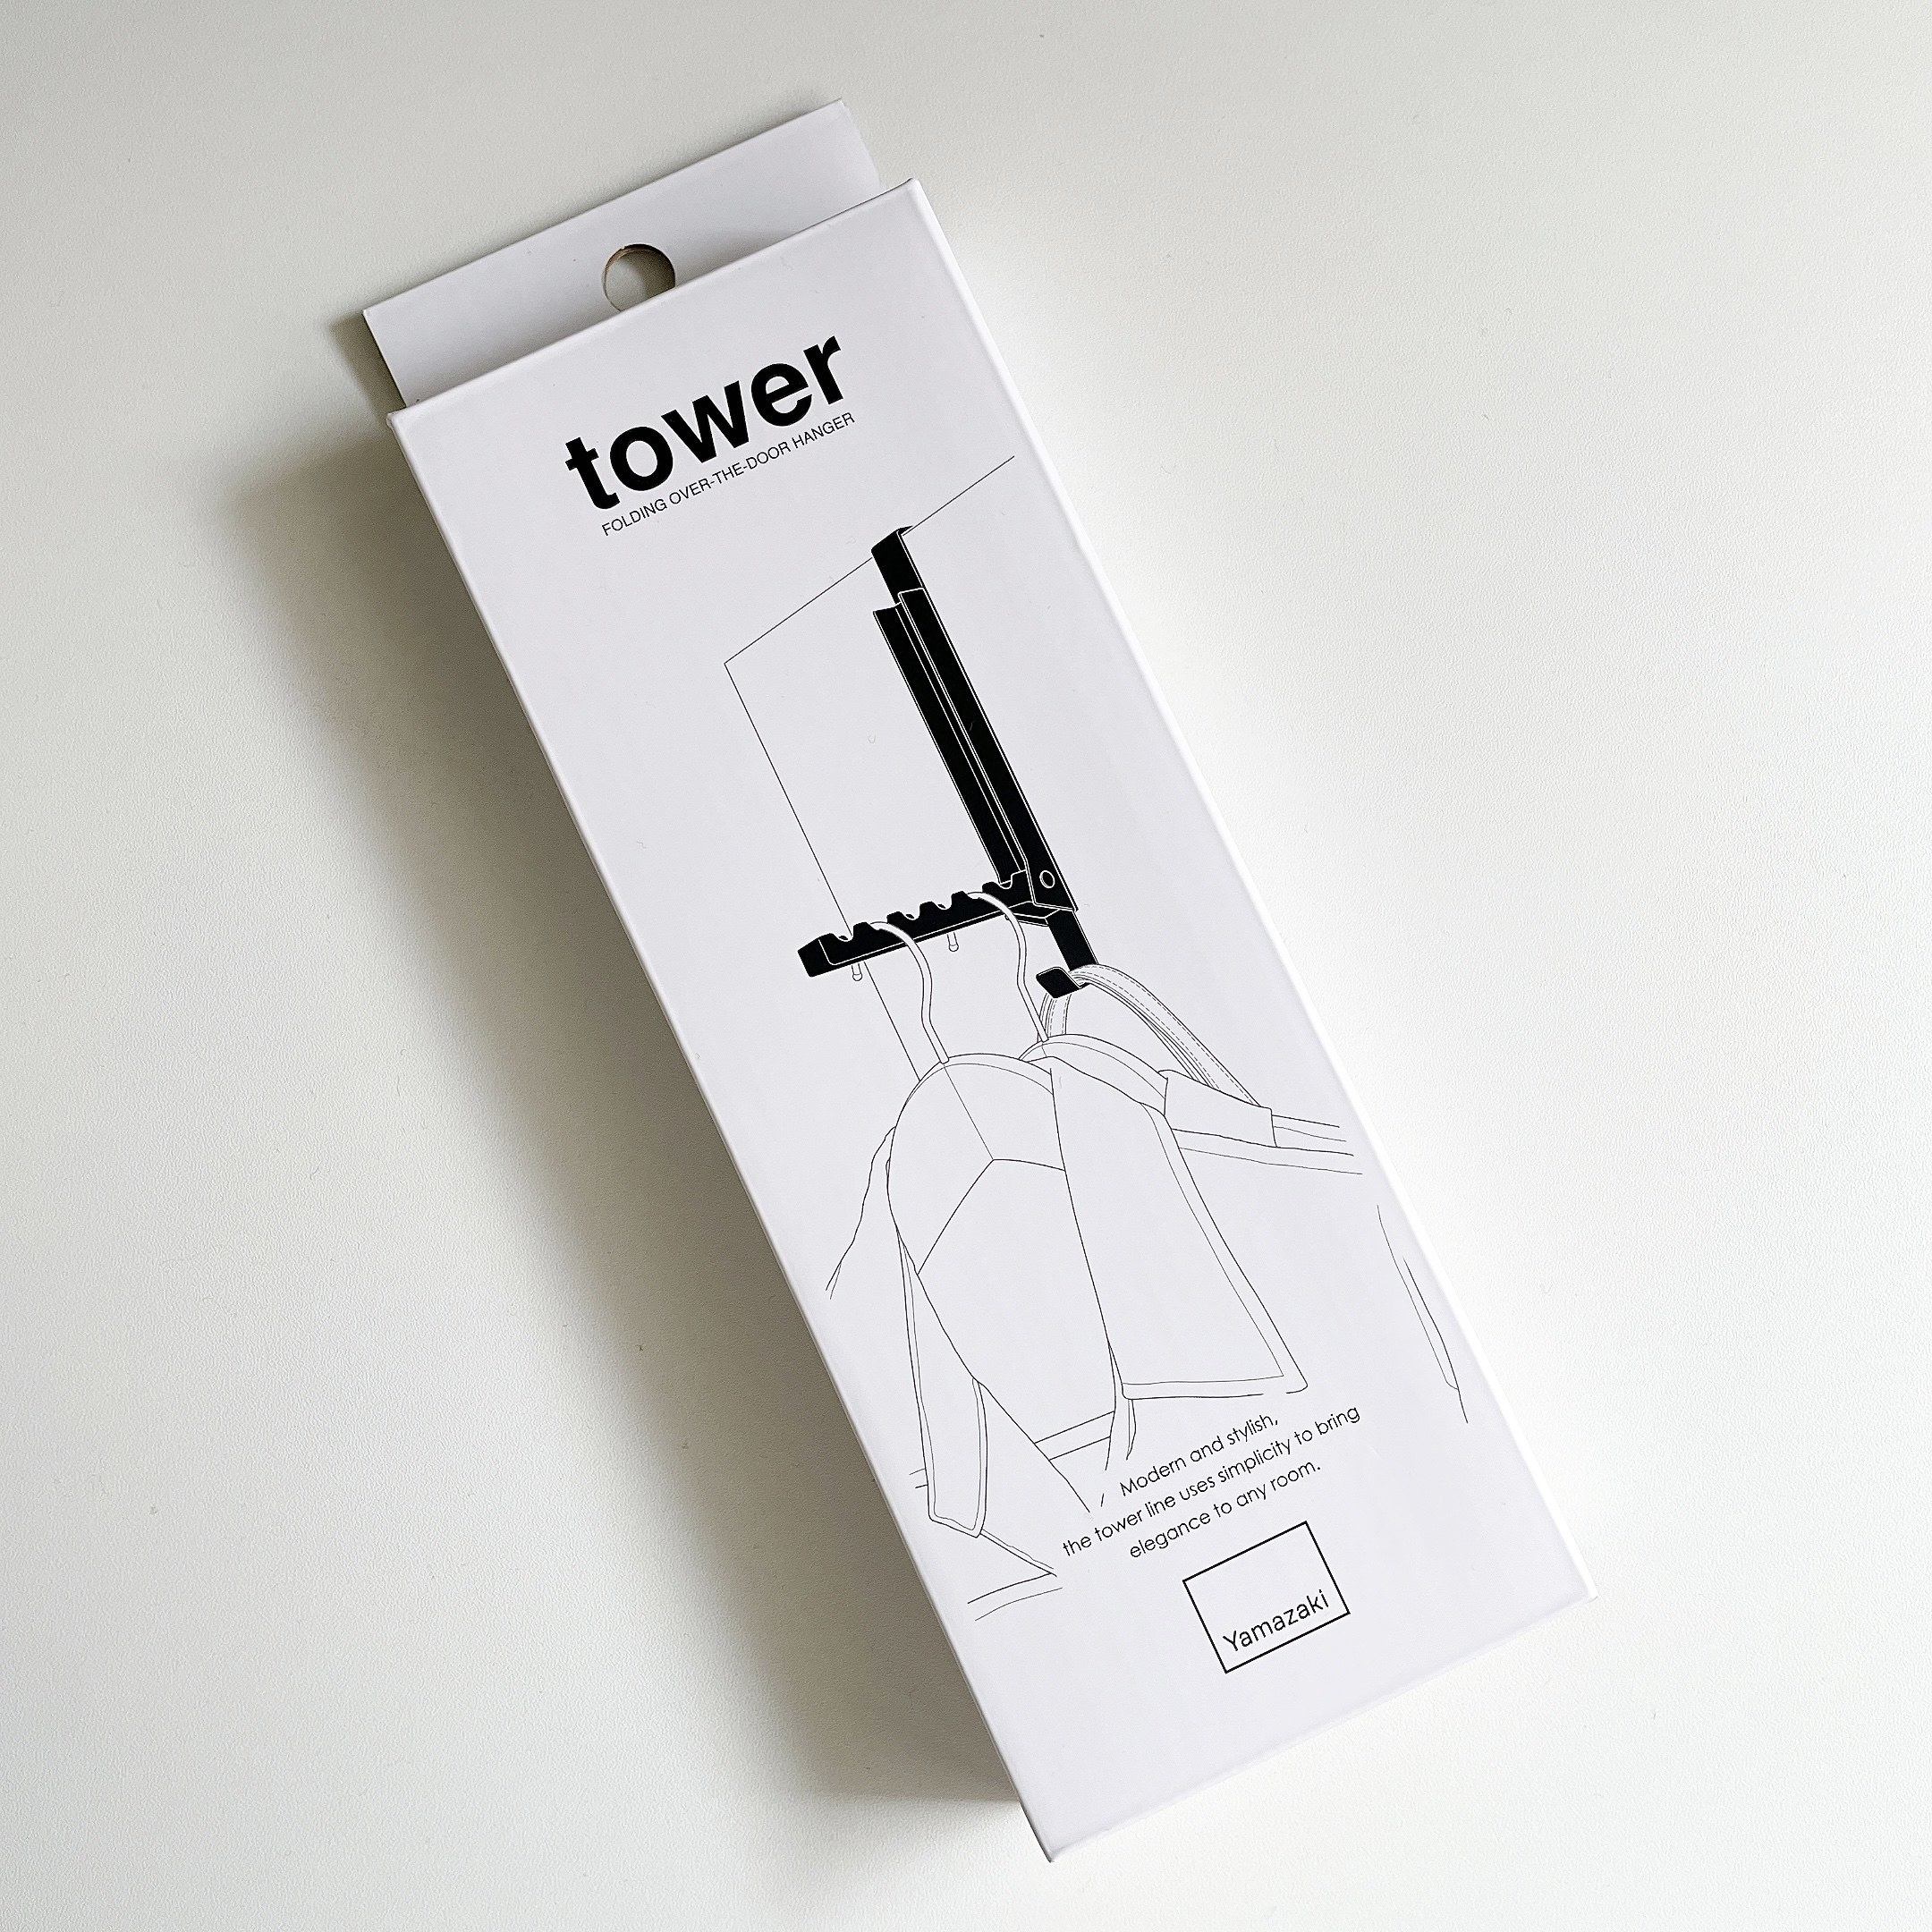 ハンズのおすすめの便利グッズ「山崎実業 タワー（tower） 使わない時は収納できるドアハンガー 5514 ホワイト」